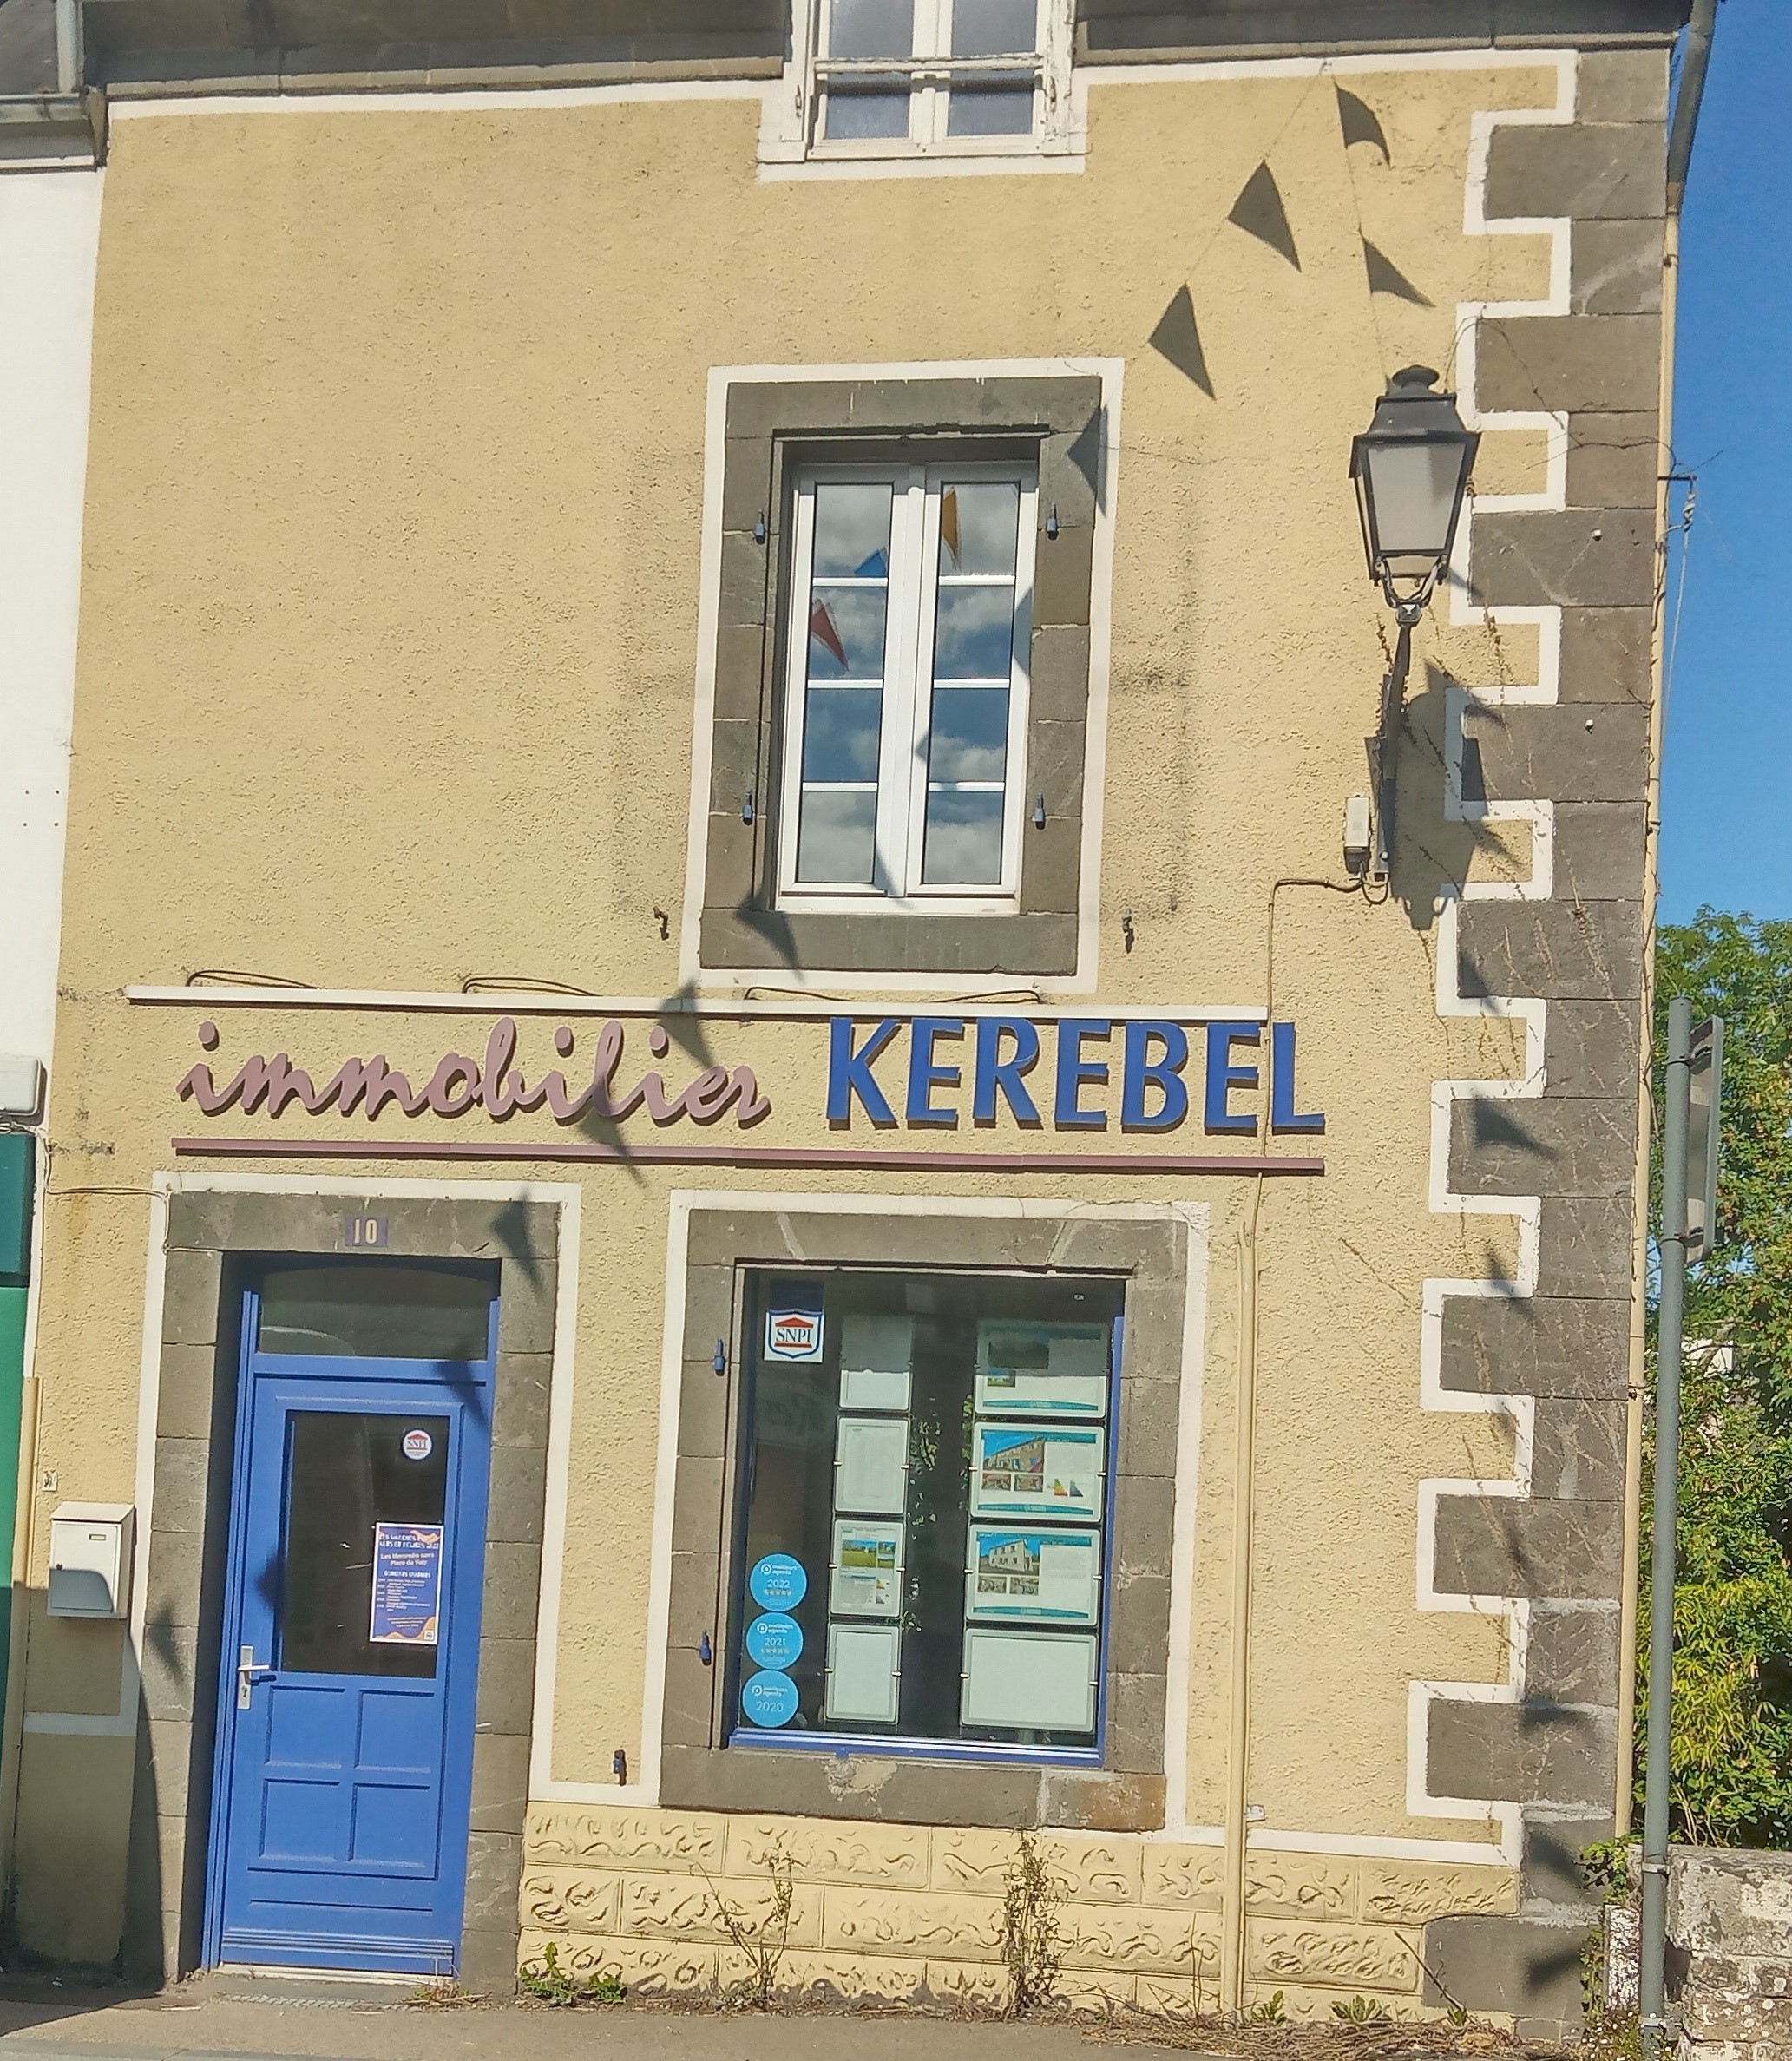 Immobilier Kerebel.jpg